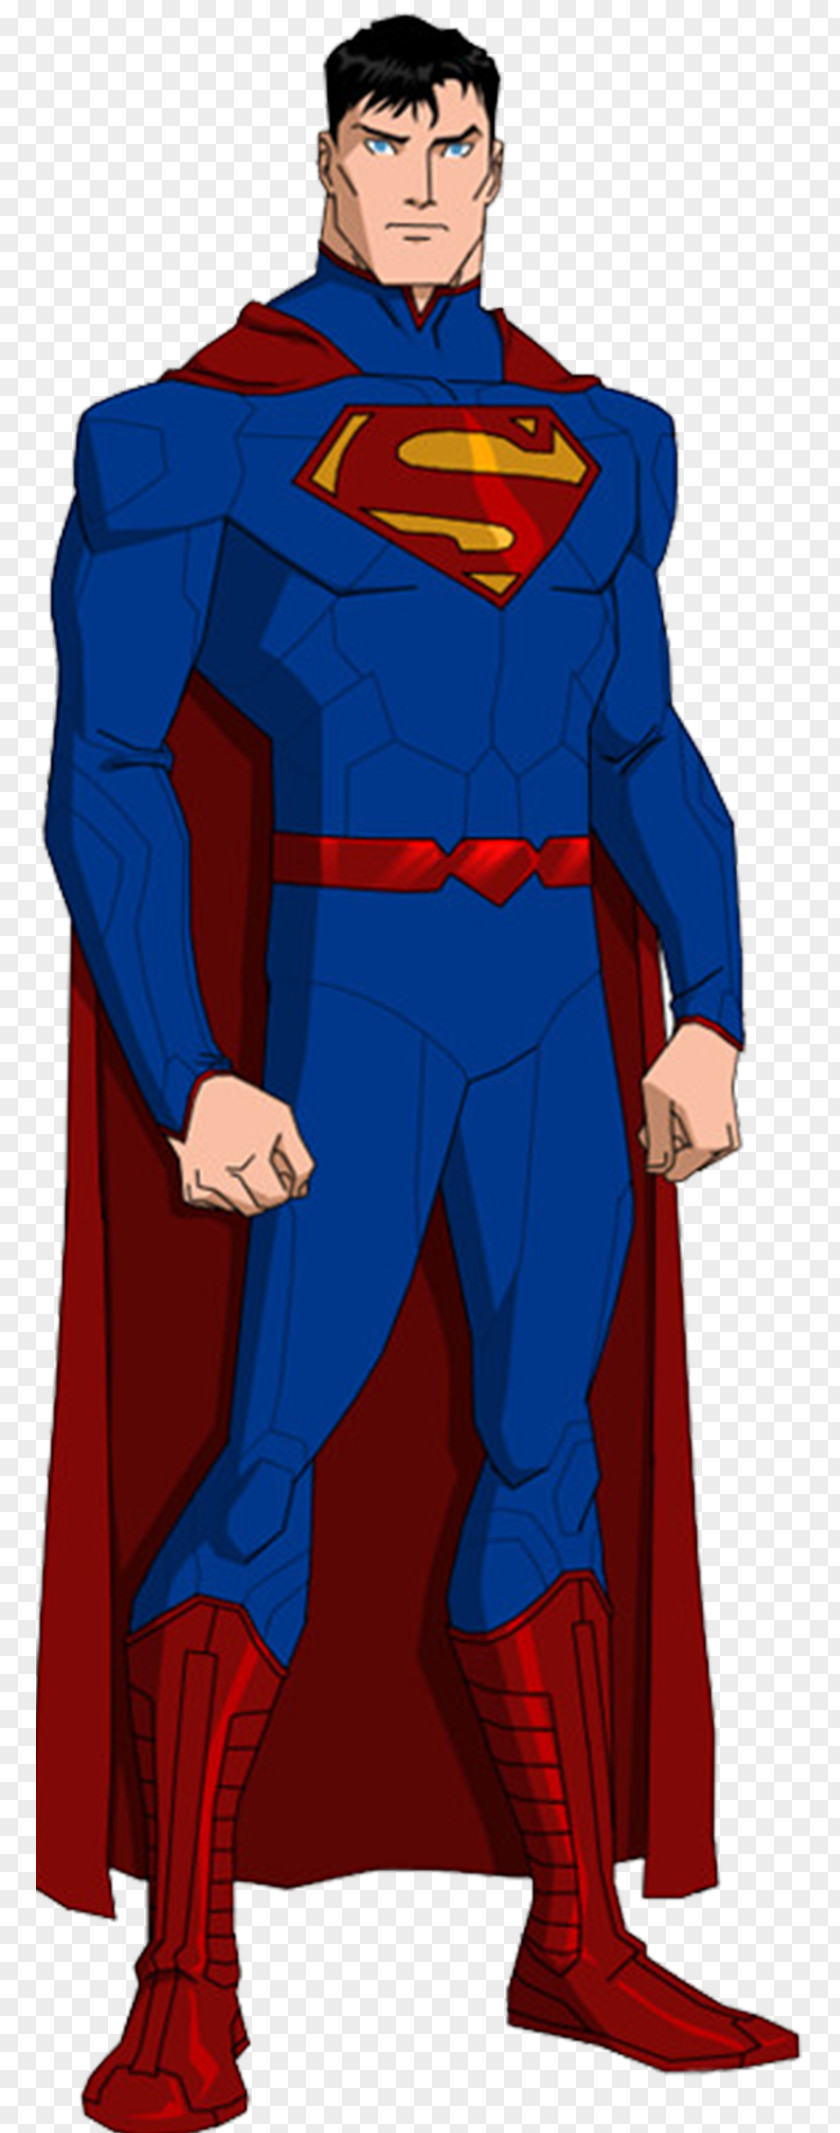 Superman Young Justice Superboy Kara Zor-El Batman PNG